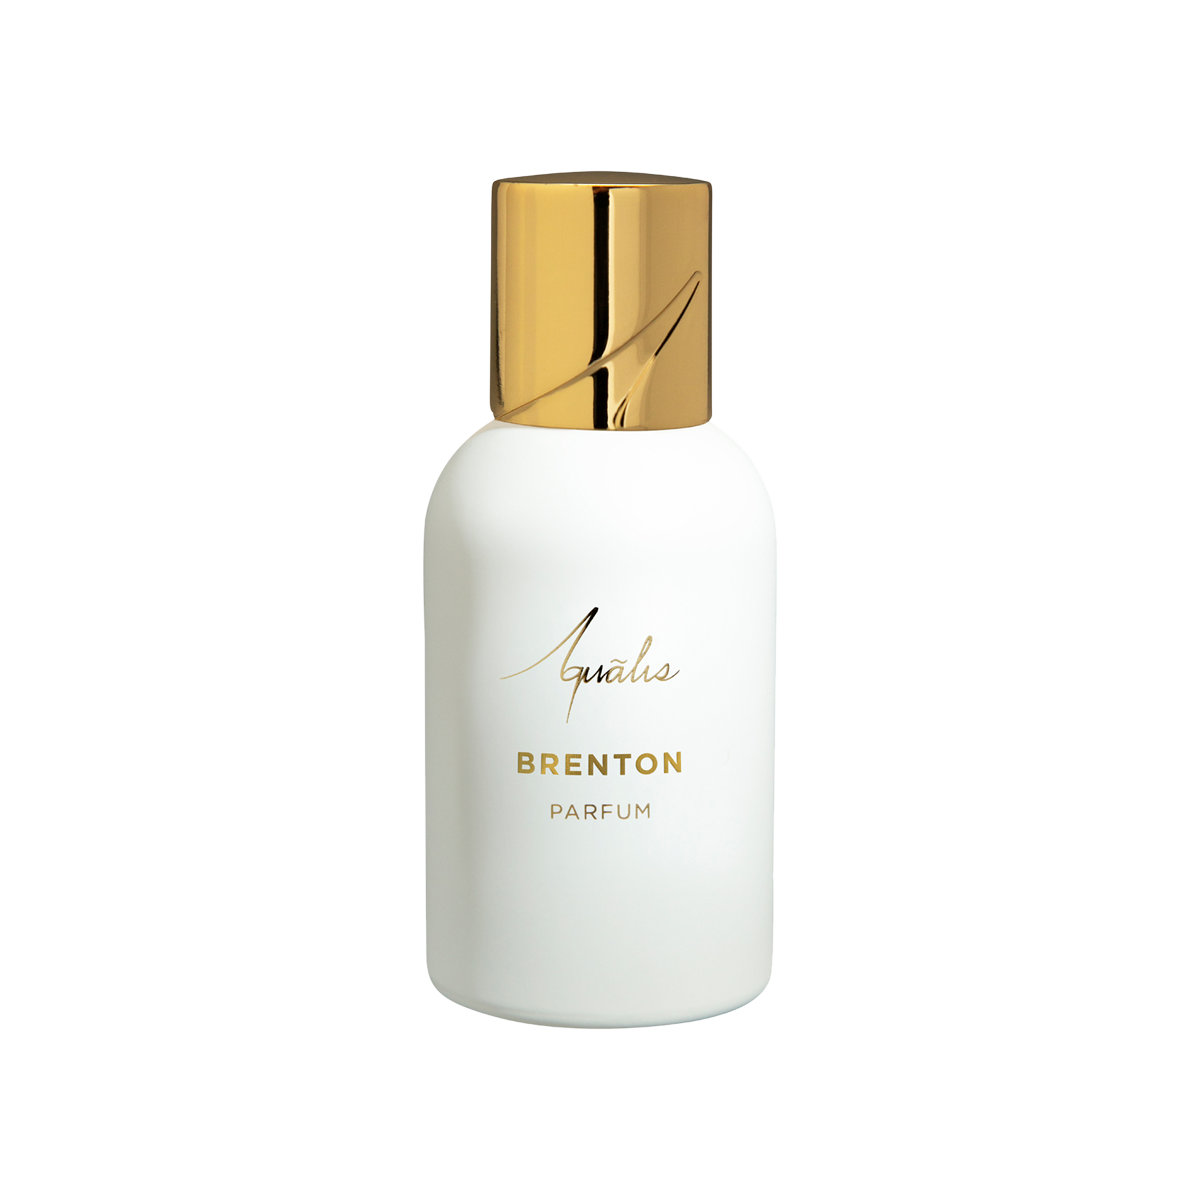 Aqualis - Brenton Extrait de Parfum